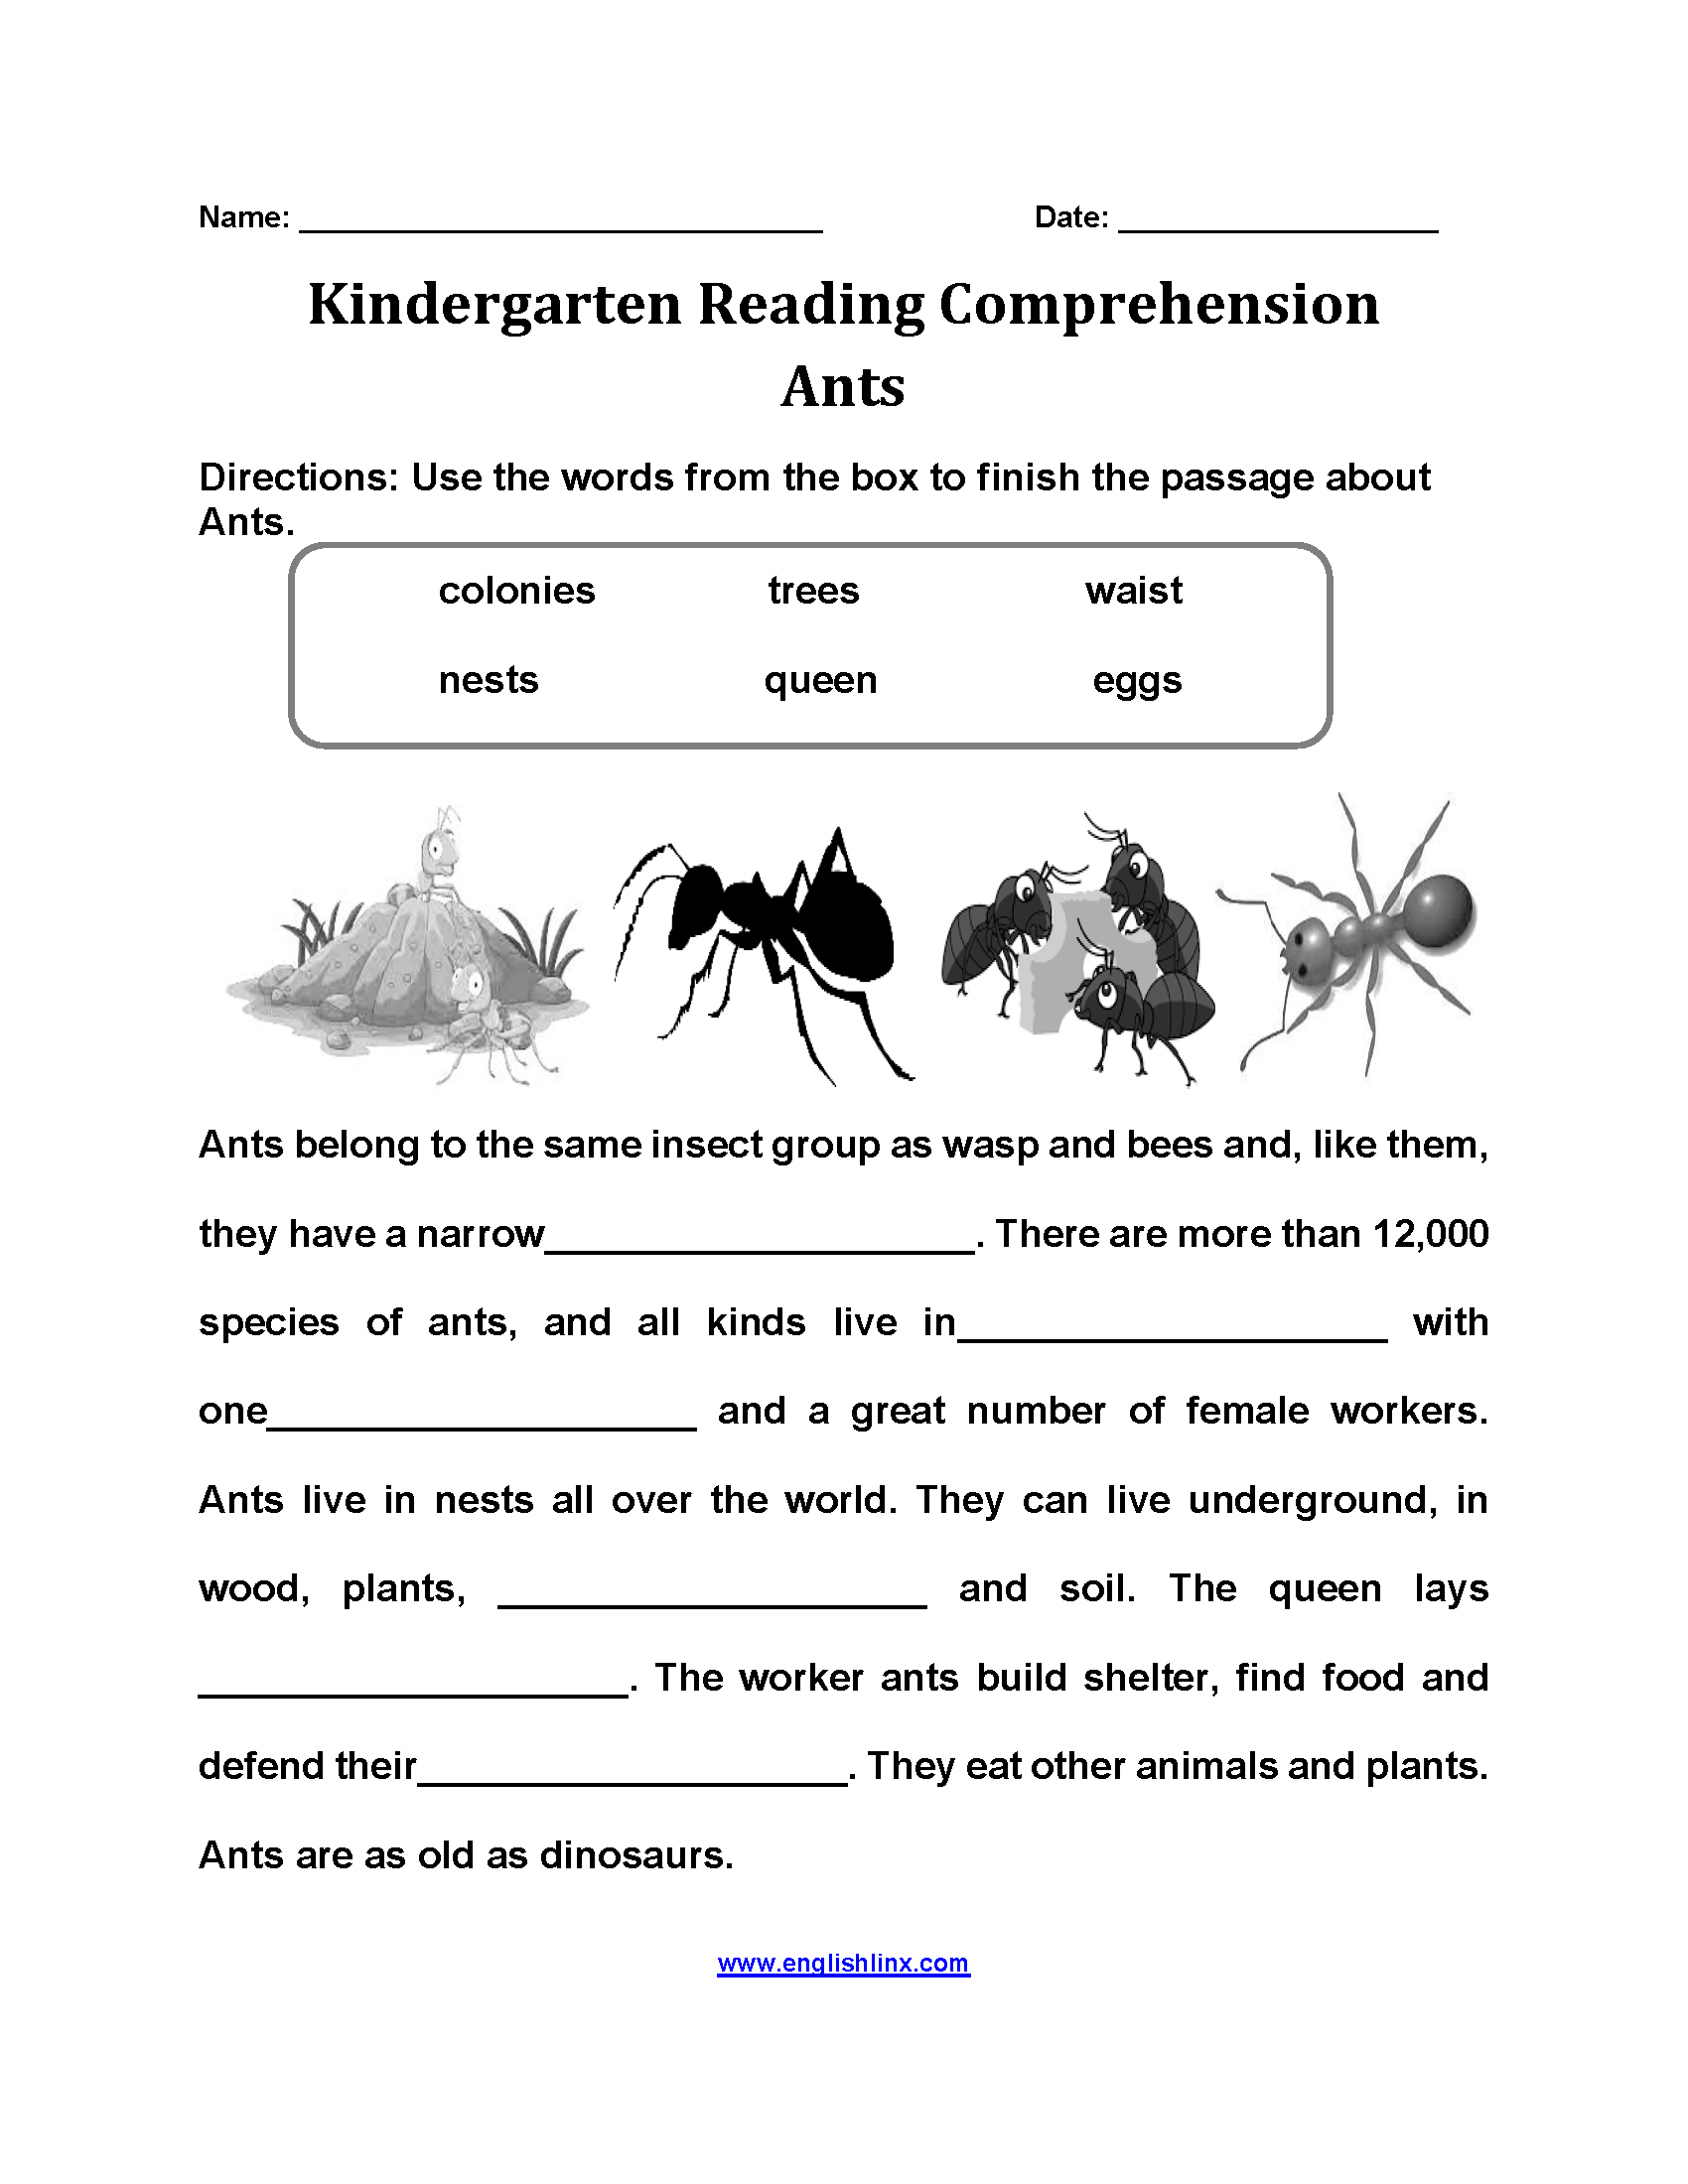 Ant's Kindergarten Reading Comprehension Worksheets